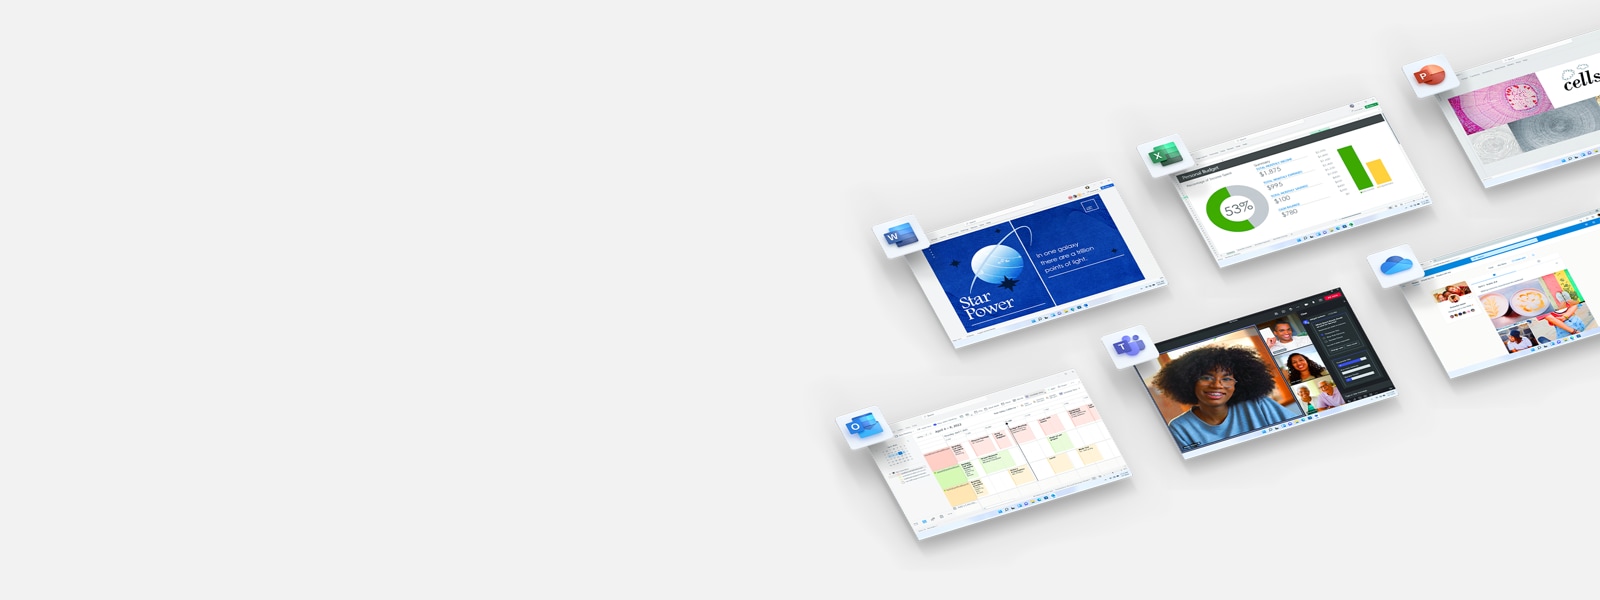 Telas e ícones dos aplicativos do Office que fazem parte do Microsoft 365